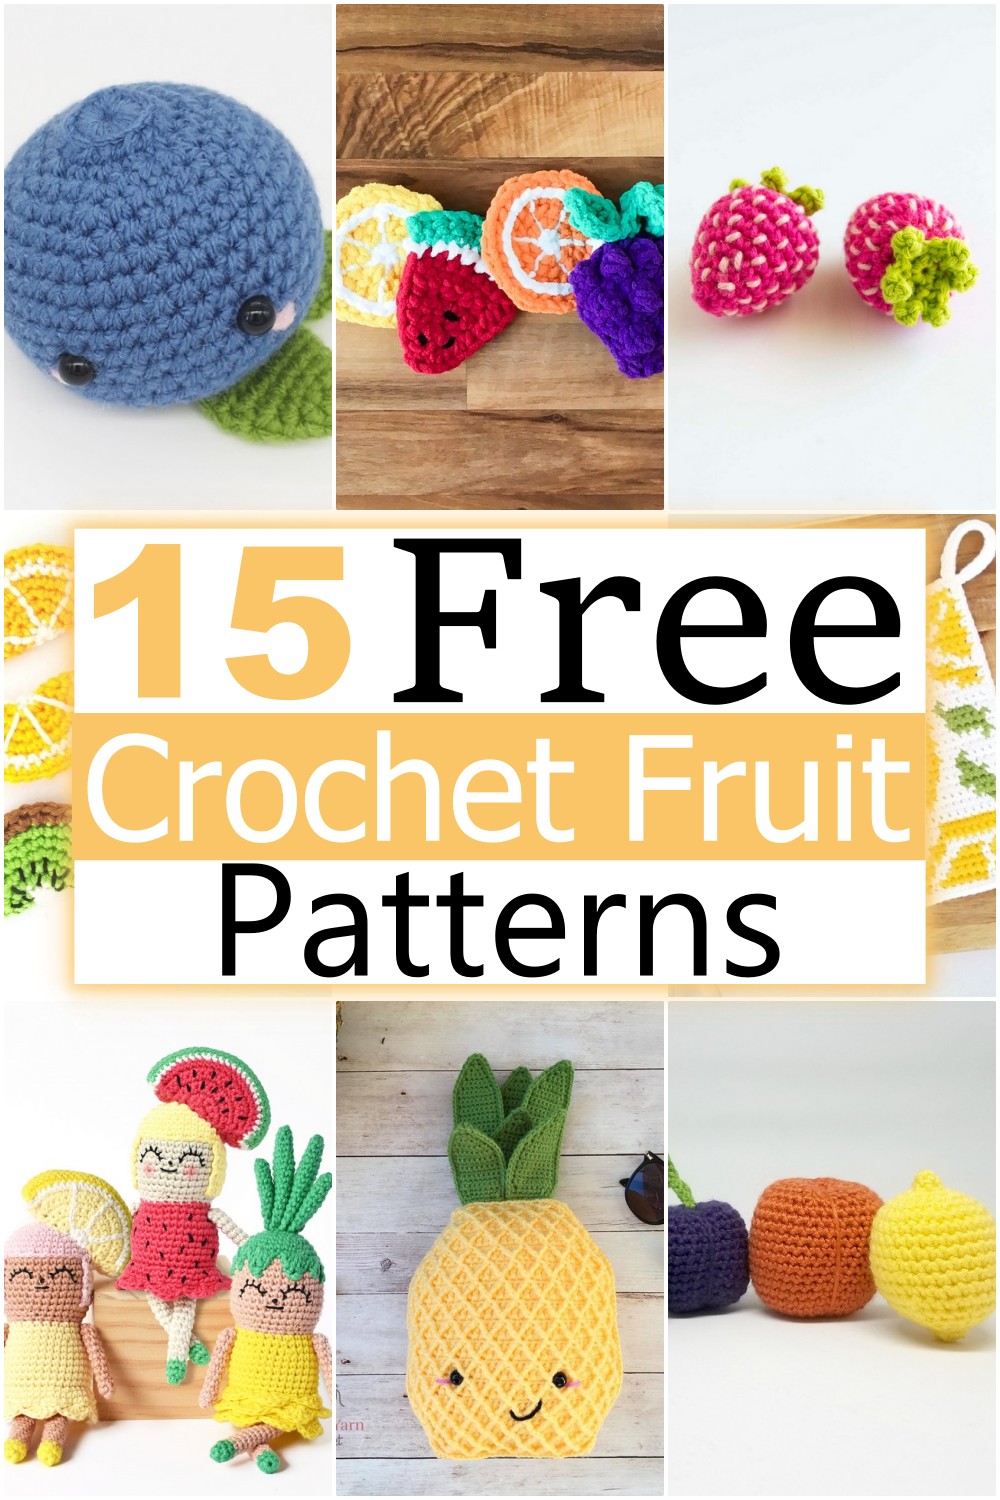 Free Crochet Fruit Patterns